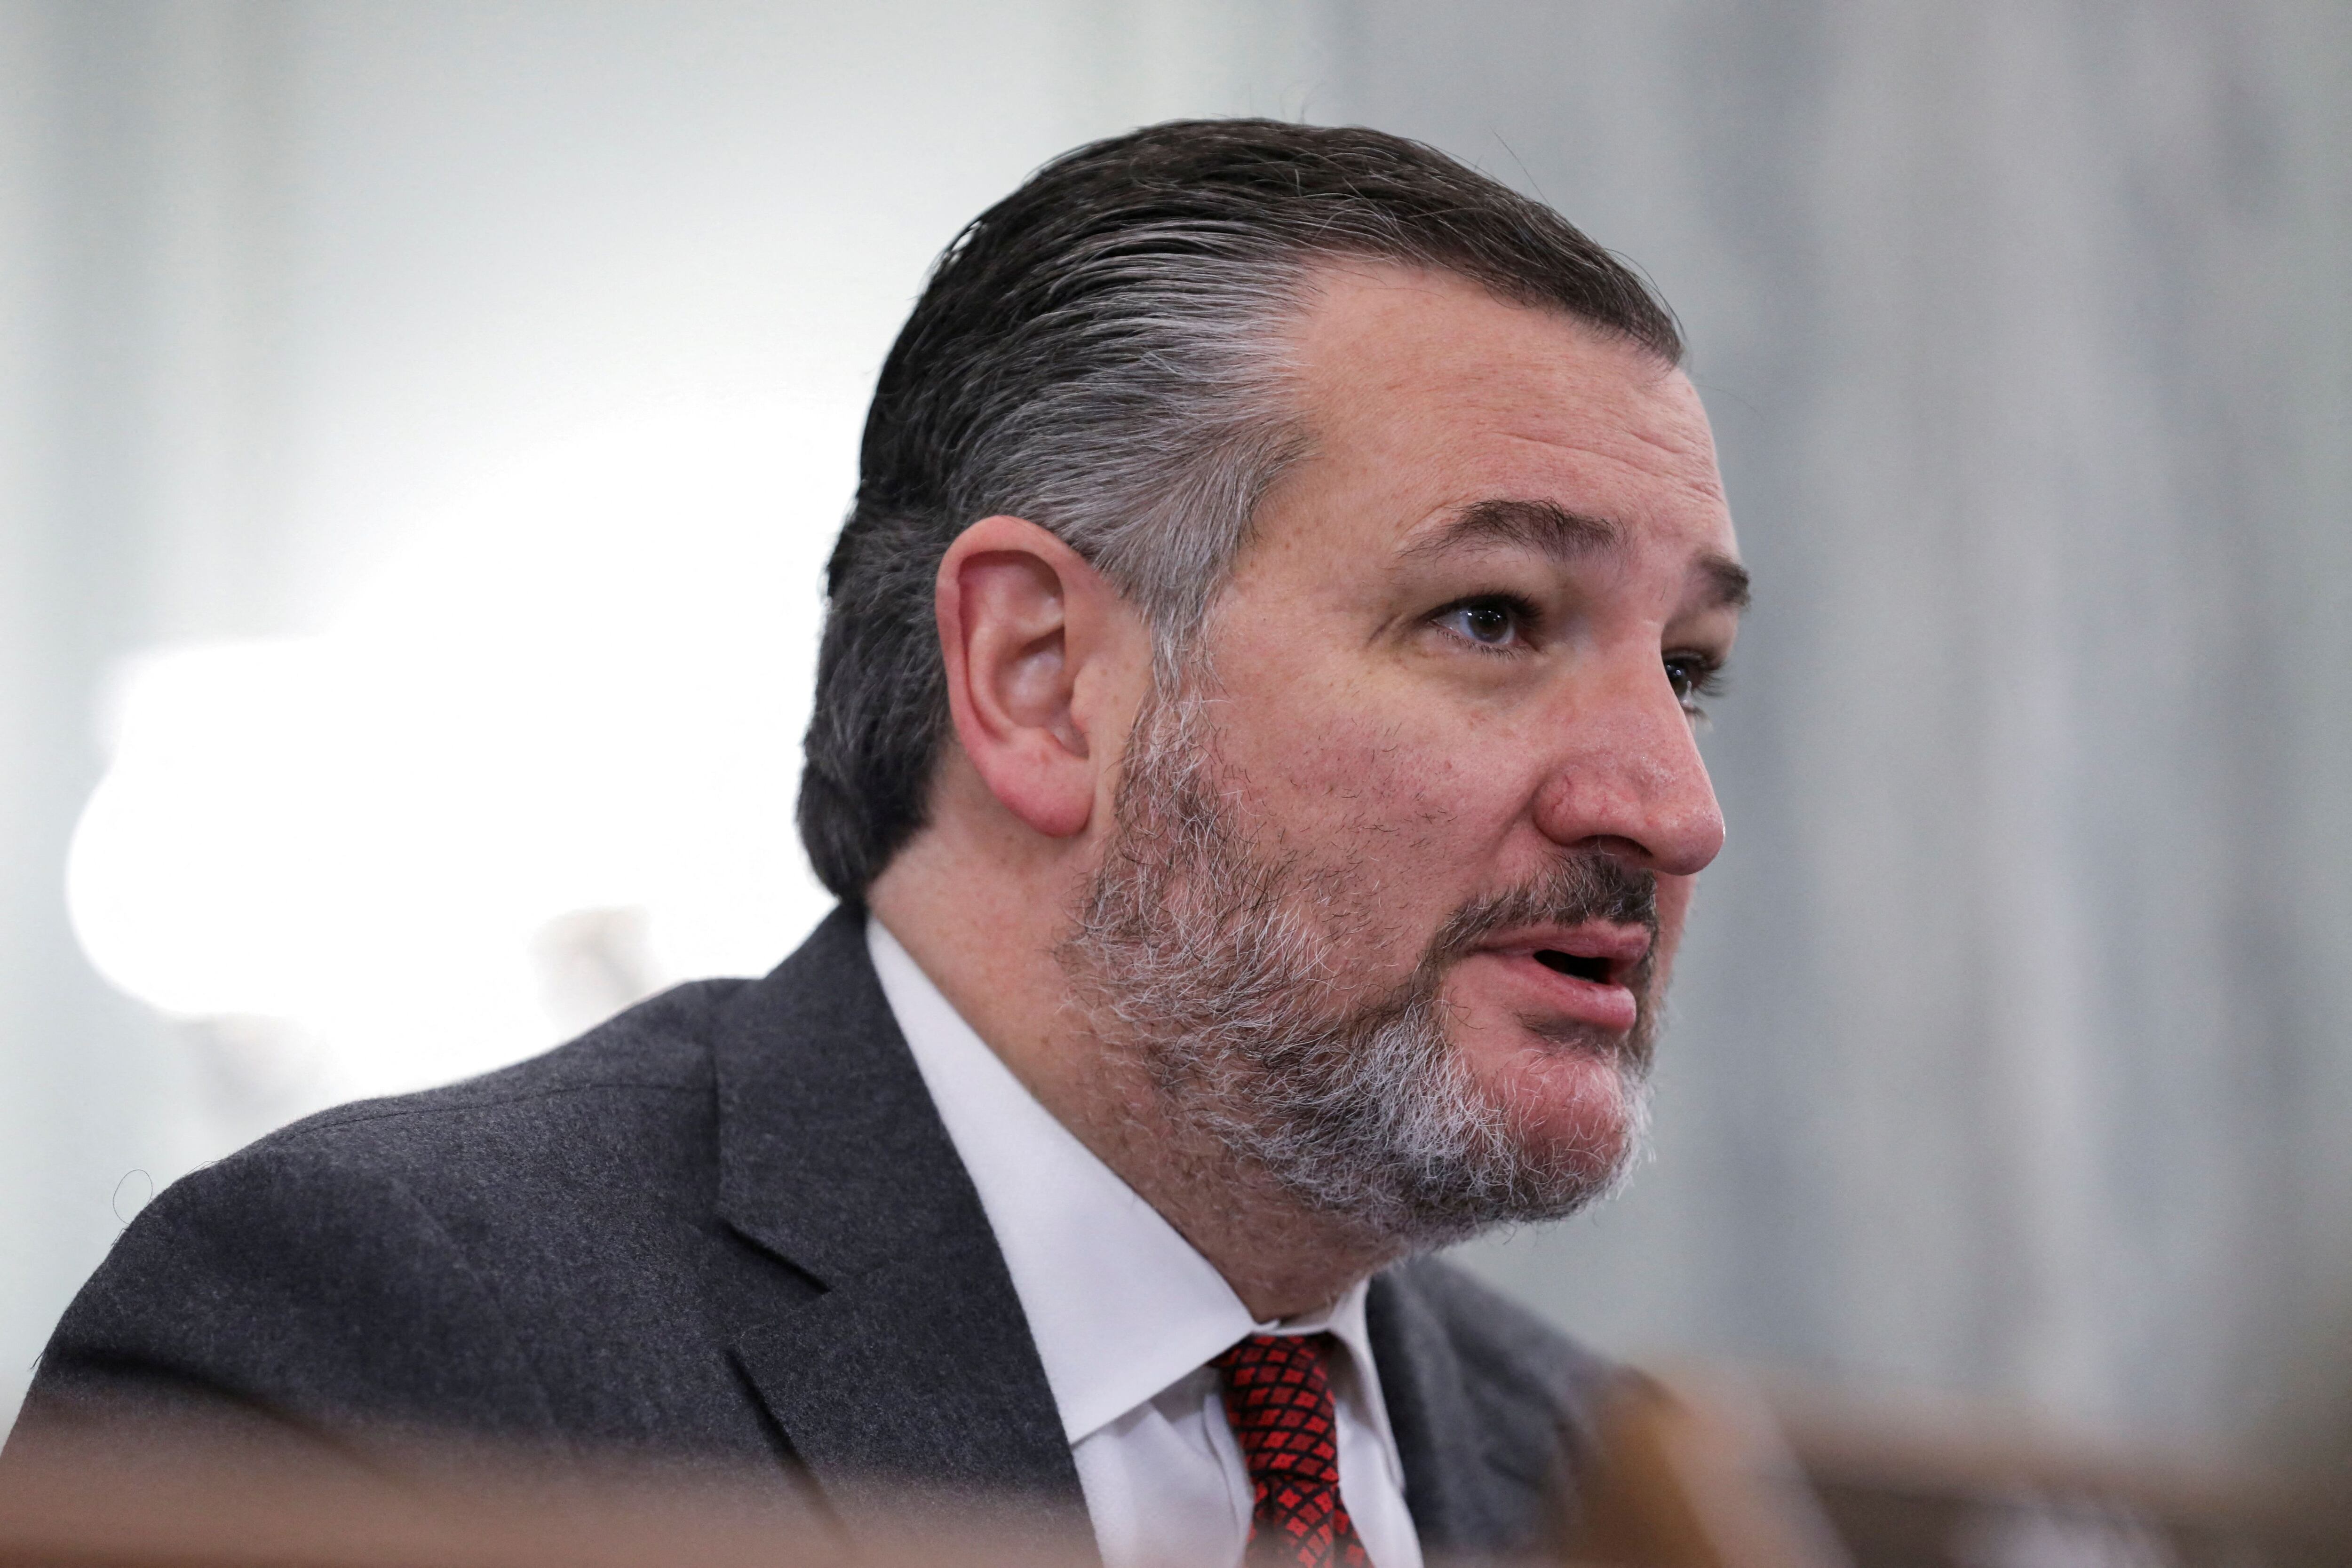 El senador Ted Cruz (R-Texas) habla durante una audiencia en el Capitolio en Washington, EE.UU., 9 de febrero de 2023. REUTERS/Amanda Andrade-Rhoades/Archivo